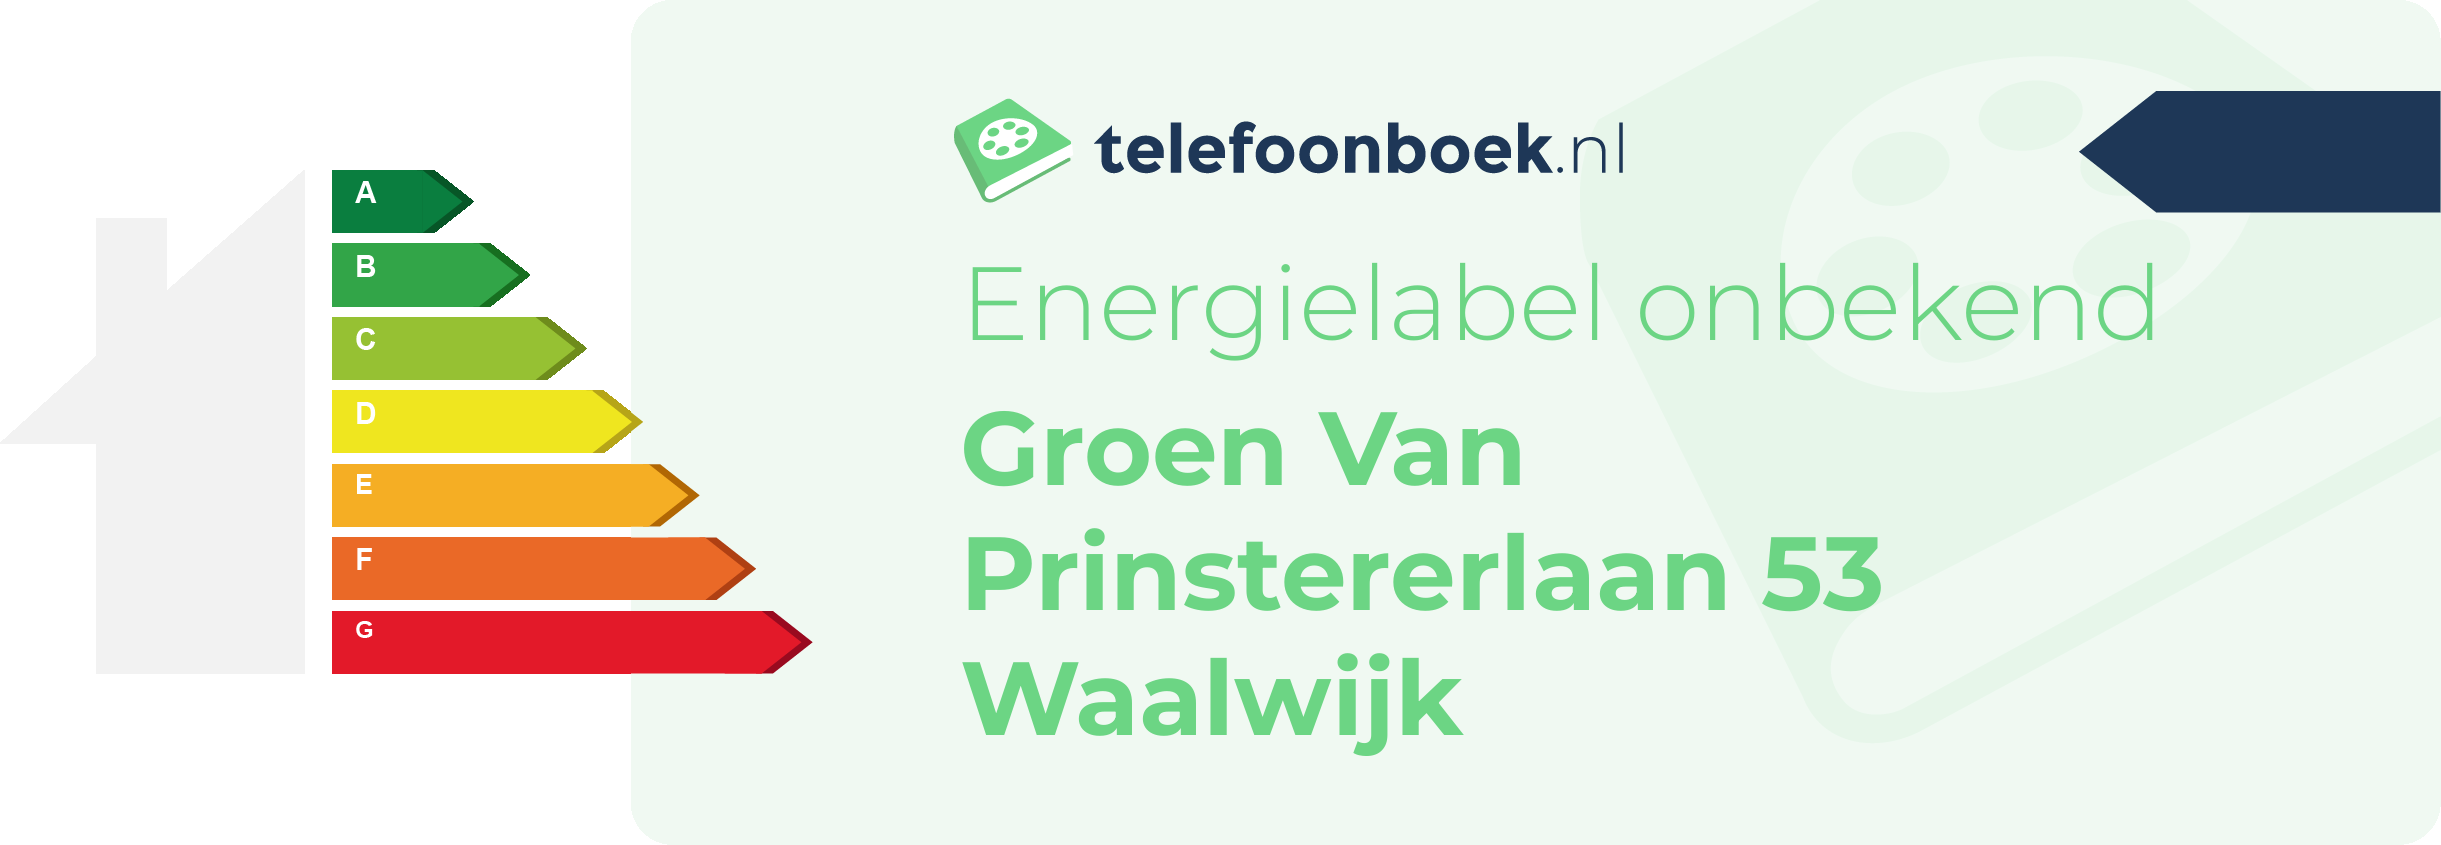 Energielabel Groen Van Prinstererlaan 53 Waalwijk